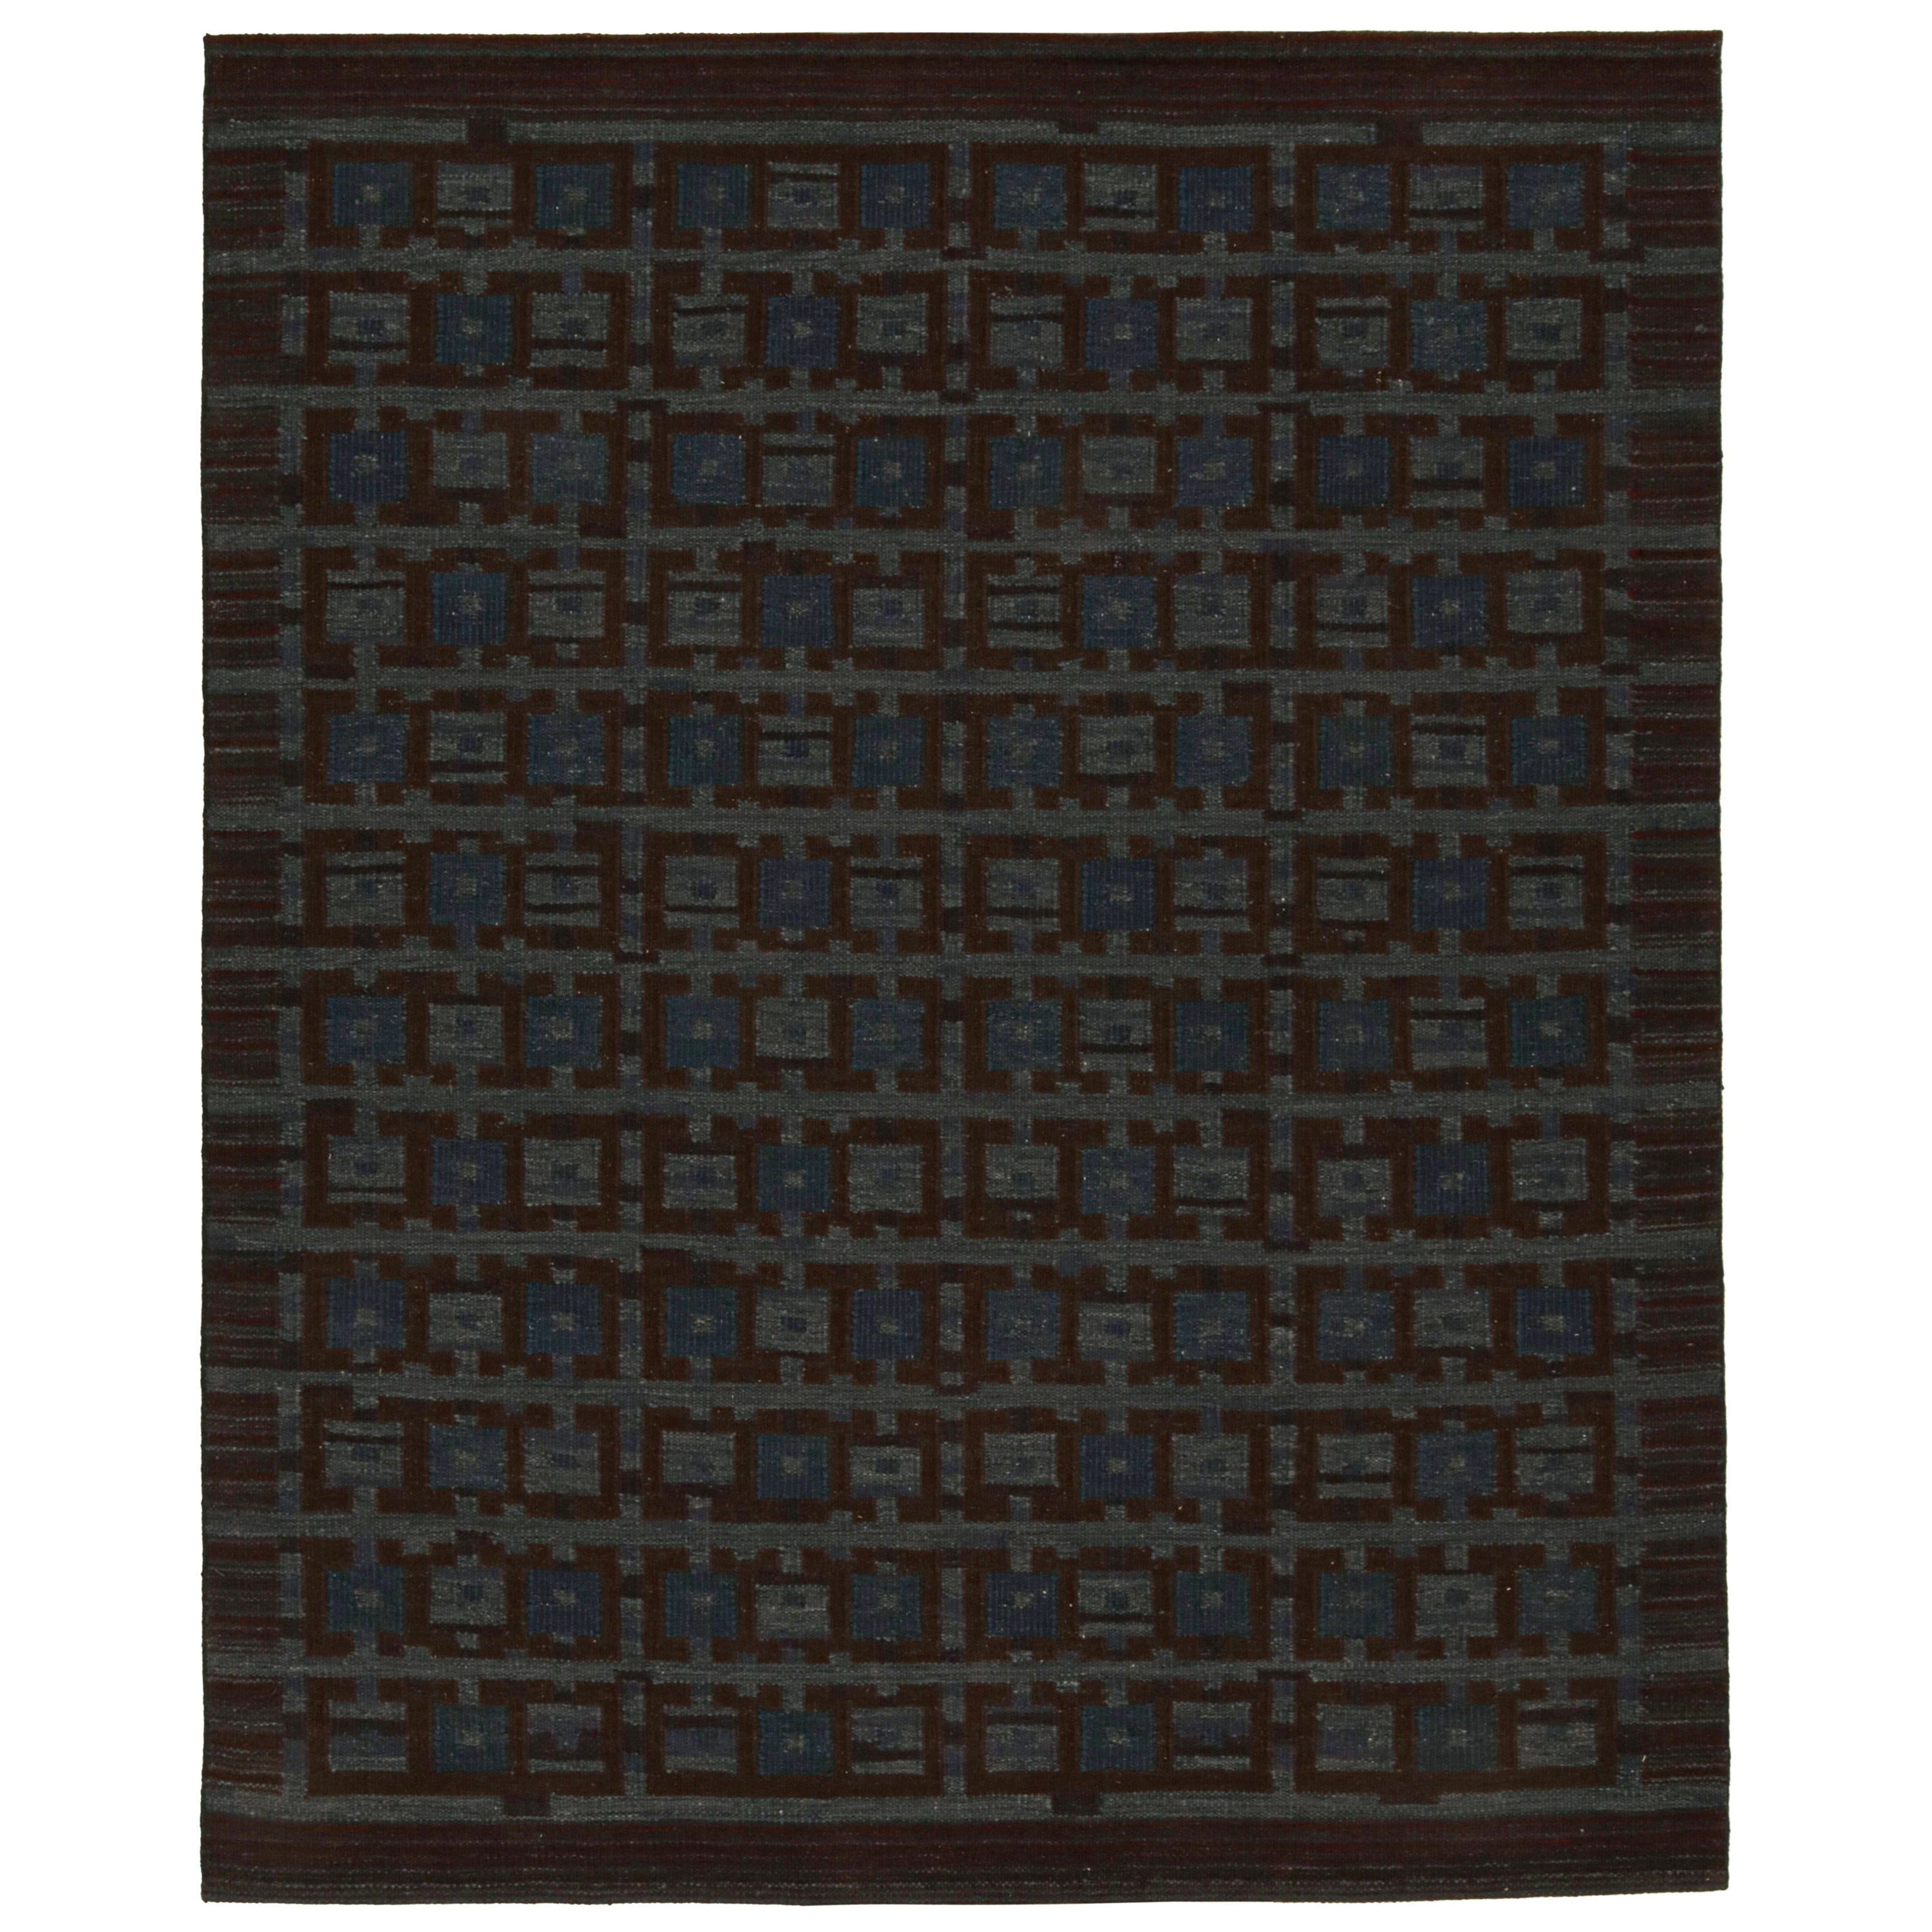 Rug & Kilim's Scandinavian Style Kilim in Blue & Brown Geometric Pattern (Kilim de style scandinave à motifs géométriques bleus et bruns)